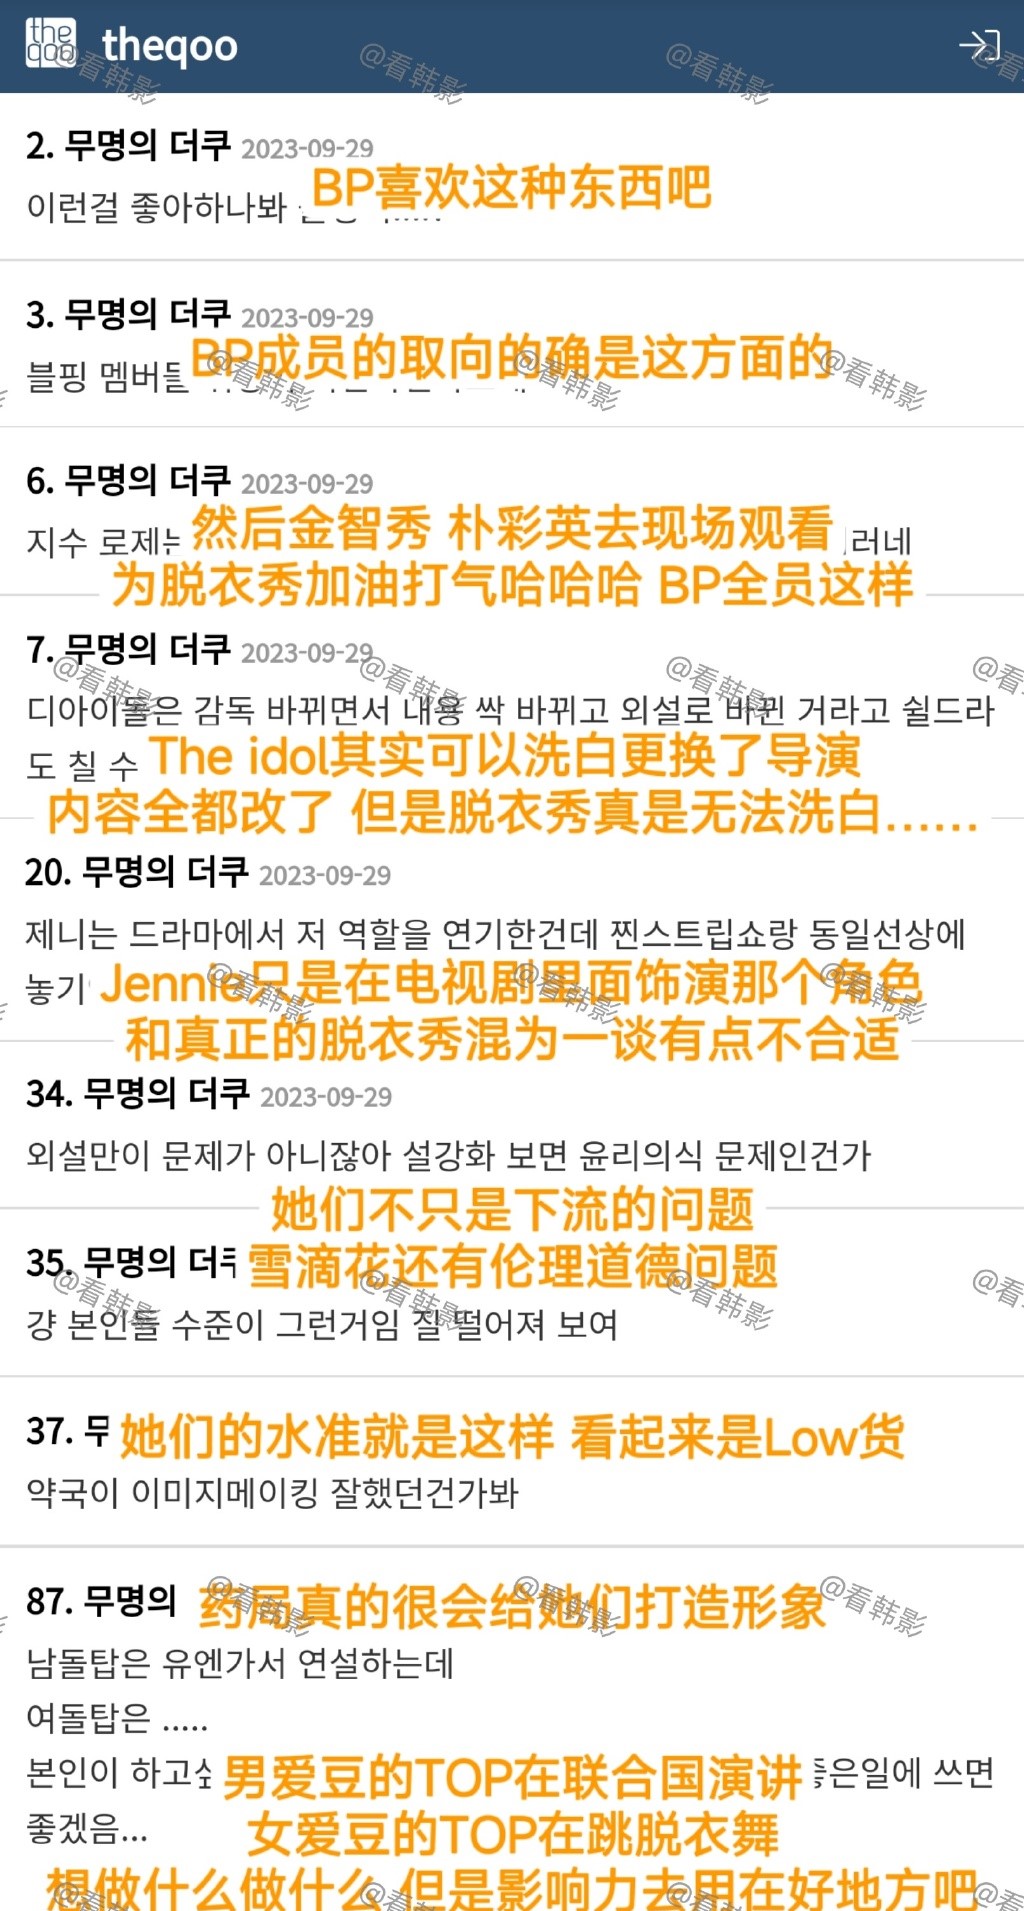 另外亦有韓國網民指BLACKPINK全體成員有道德問題。